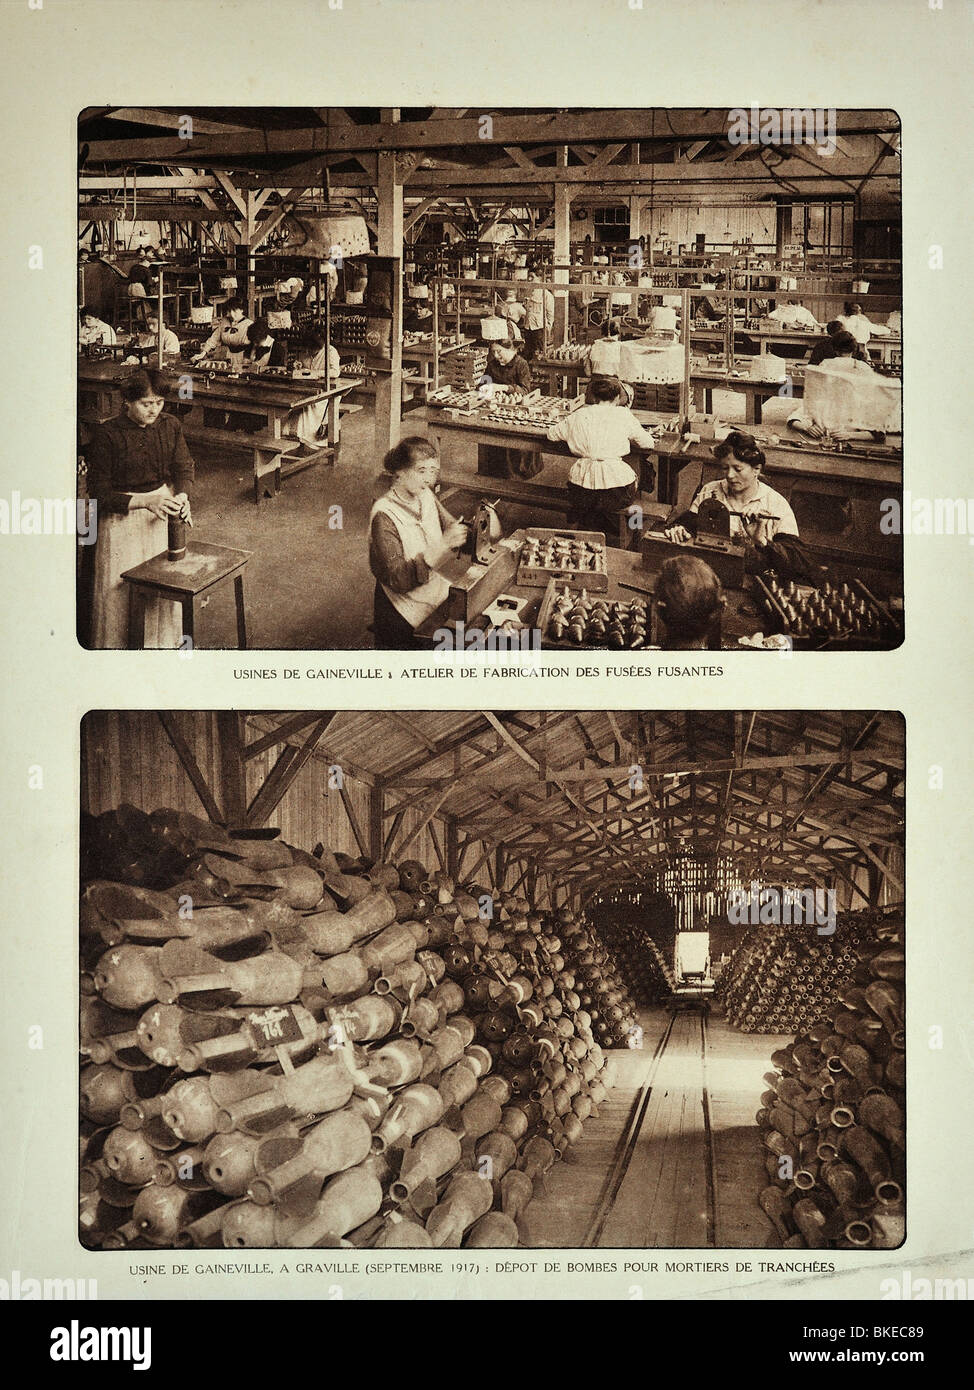 Bombe Depot und weibliche Arbeitnehmer ausfüllen Granaten in der Munitionsfabrik Gaineville bei Graville während des ersten Weltkrieges Stockfoto